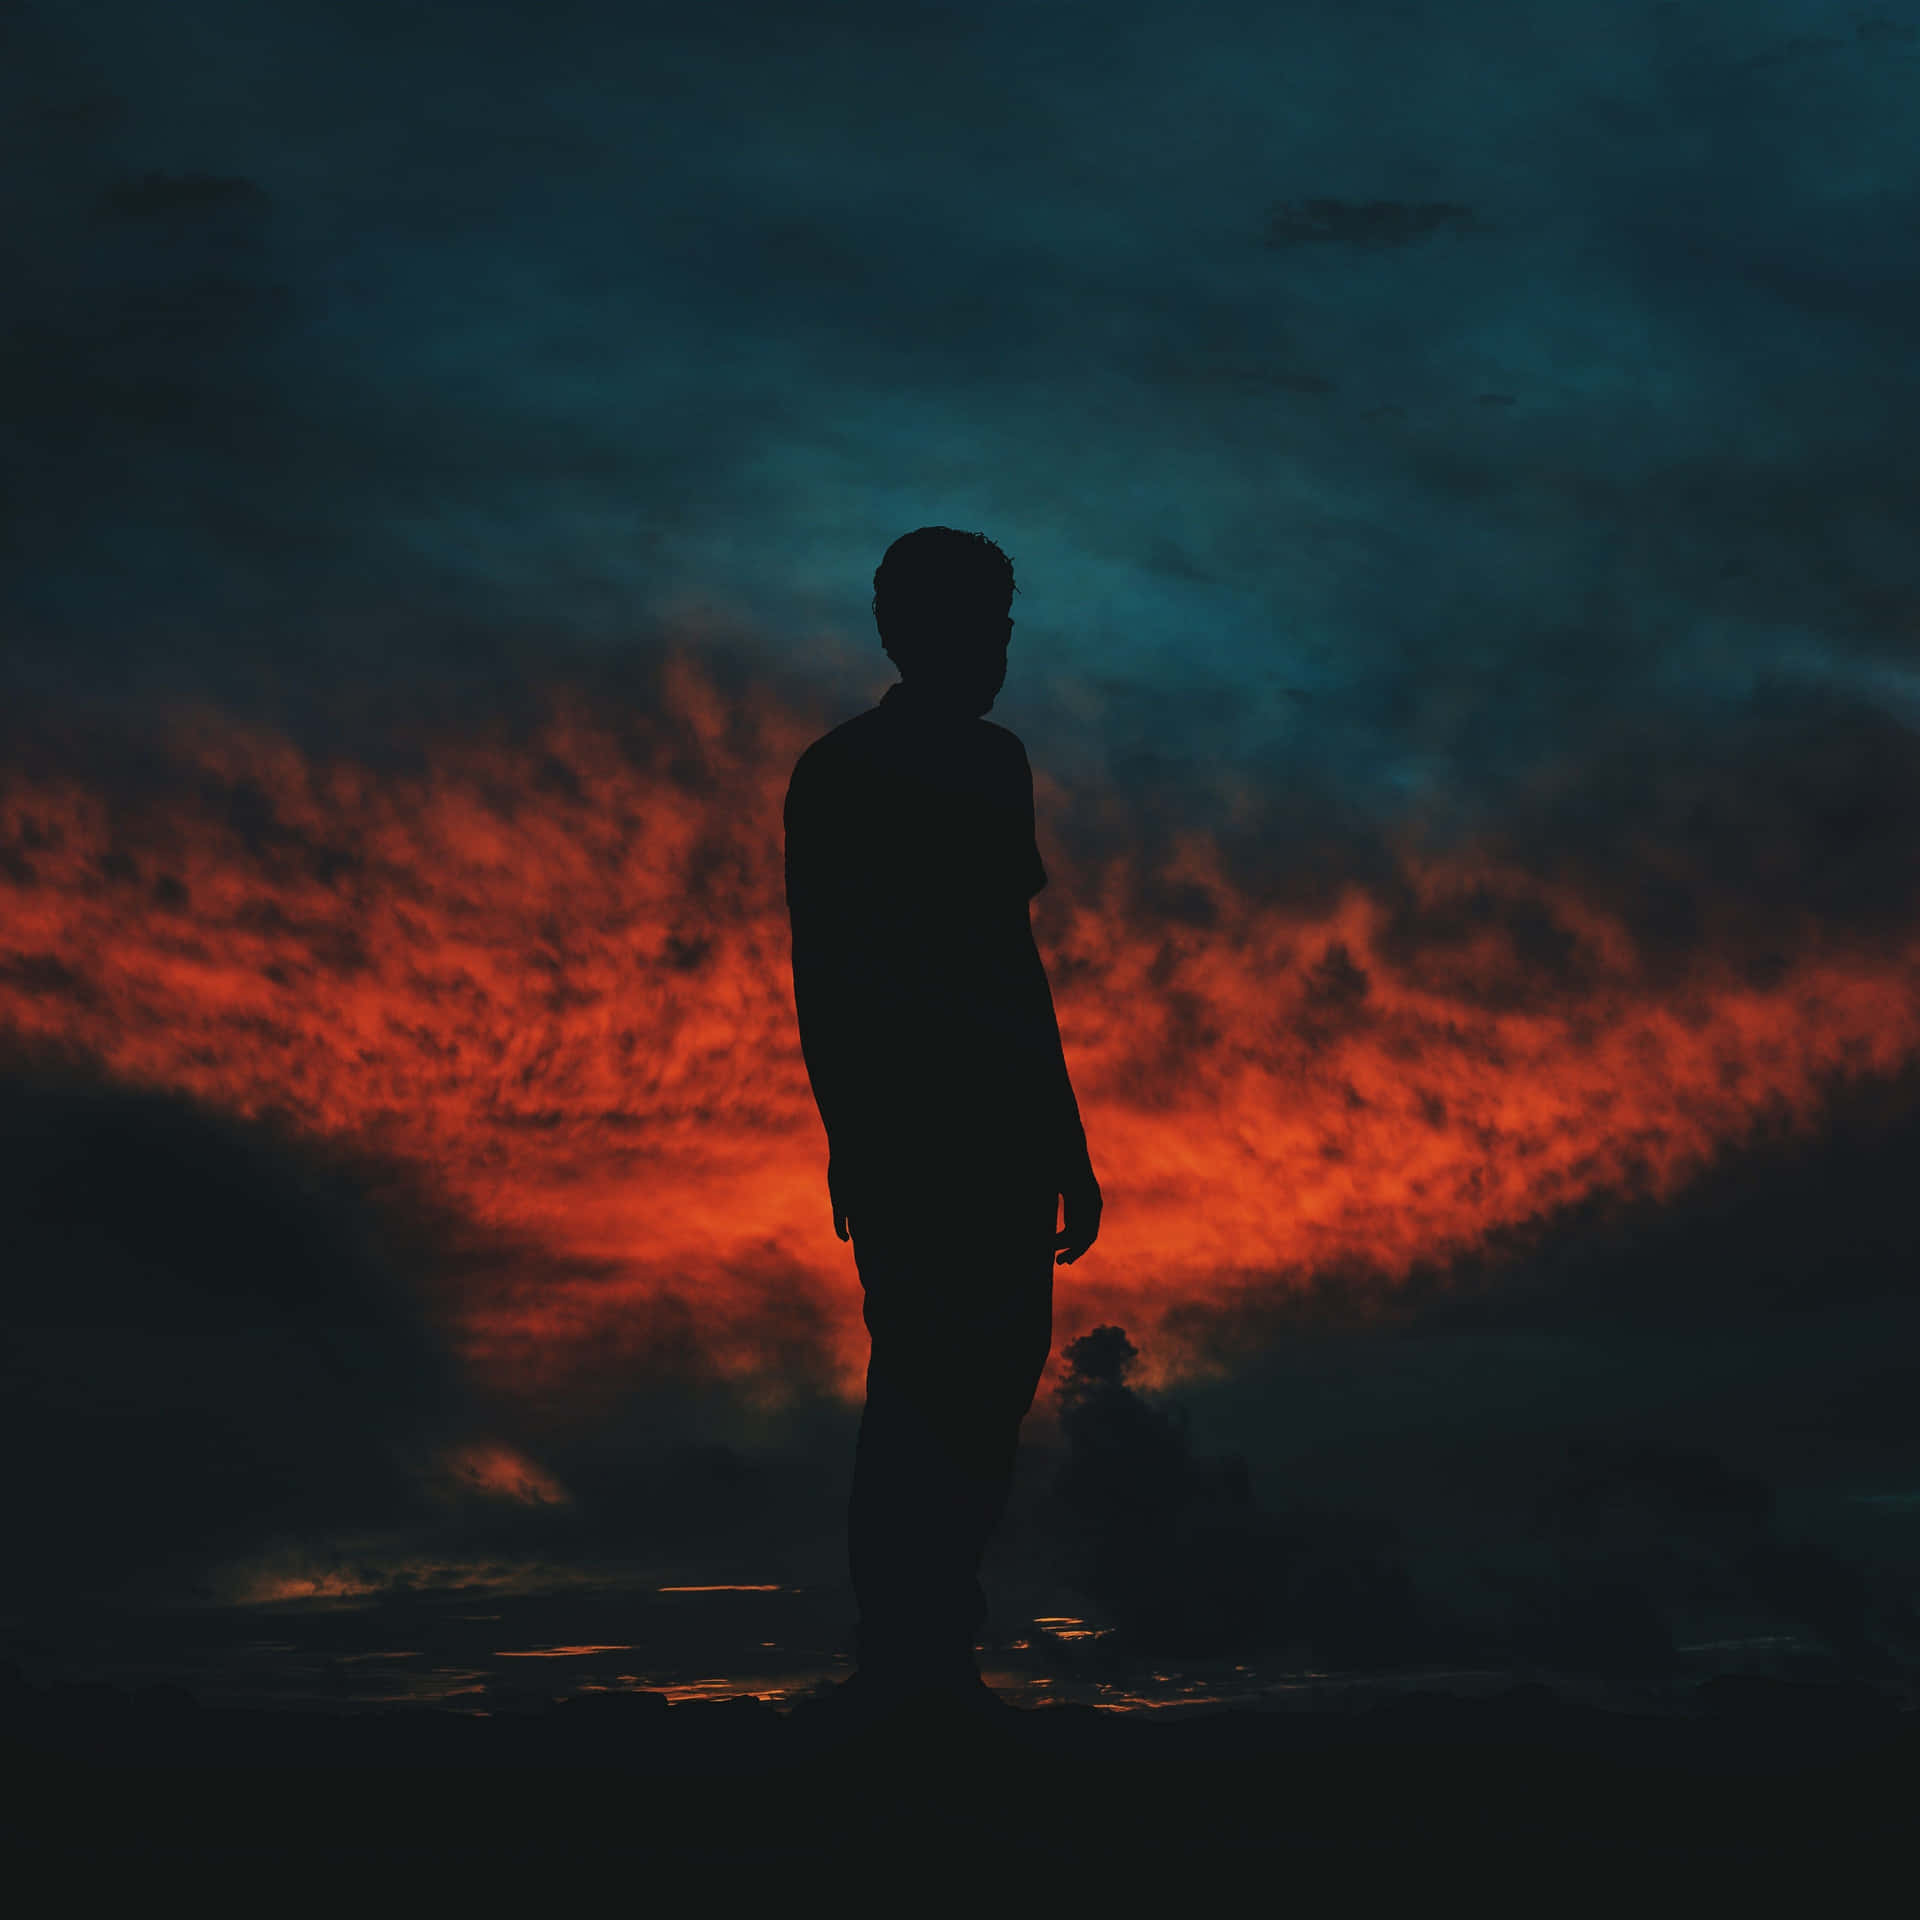 Random Person Silhouette Against Dark Sunset Sky Wallpaper